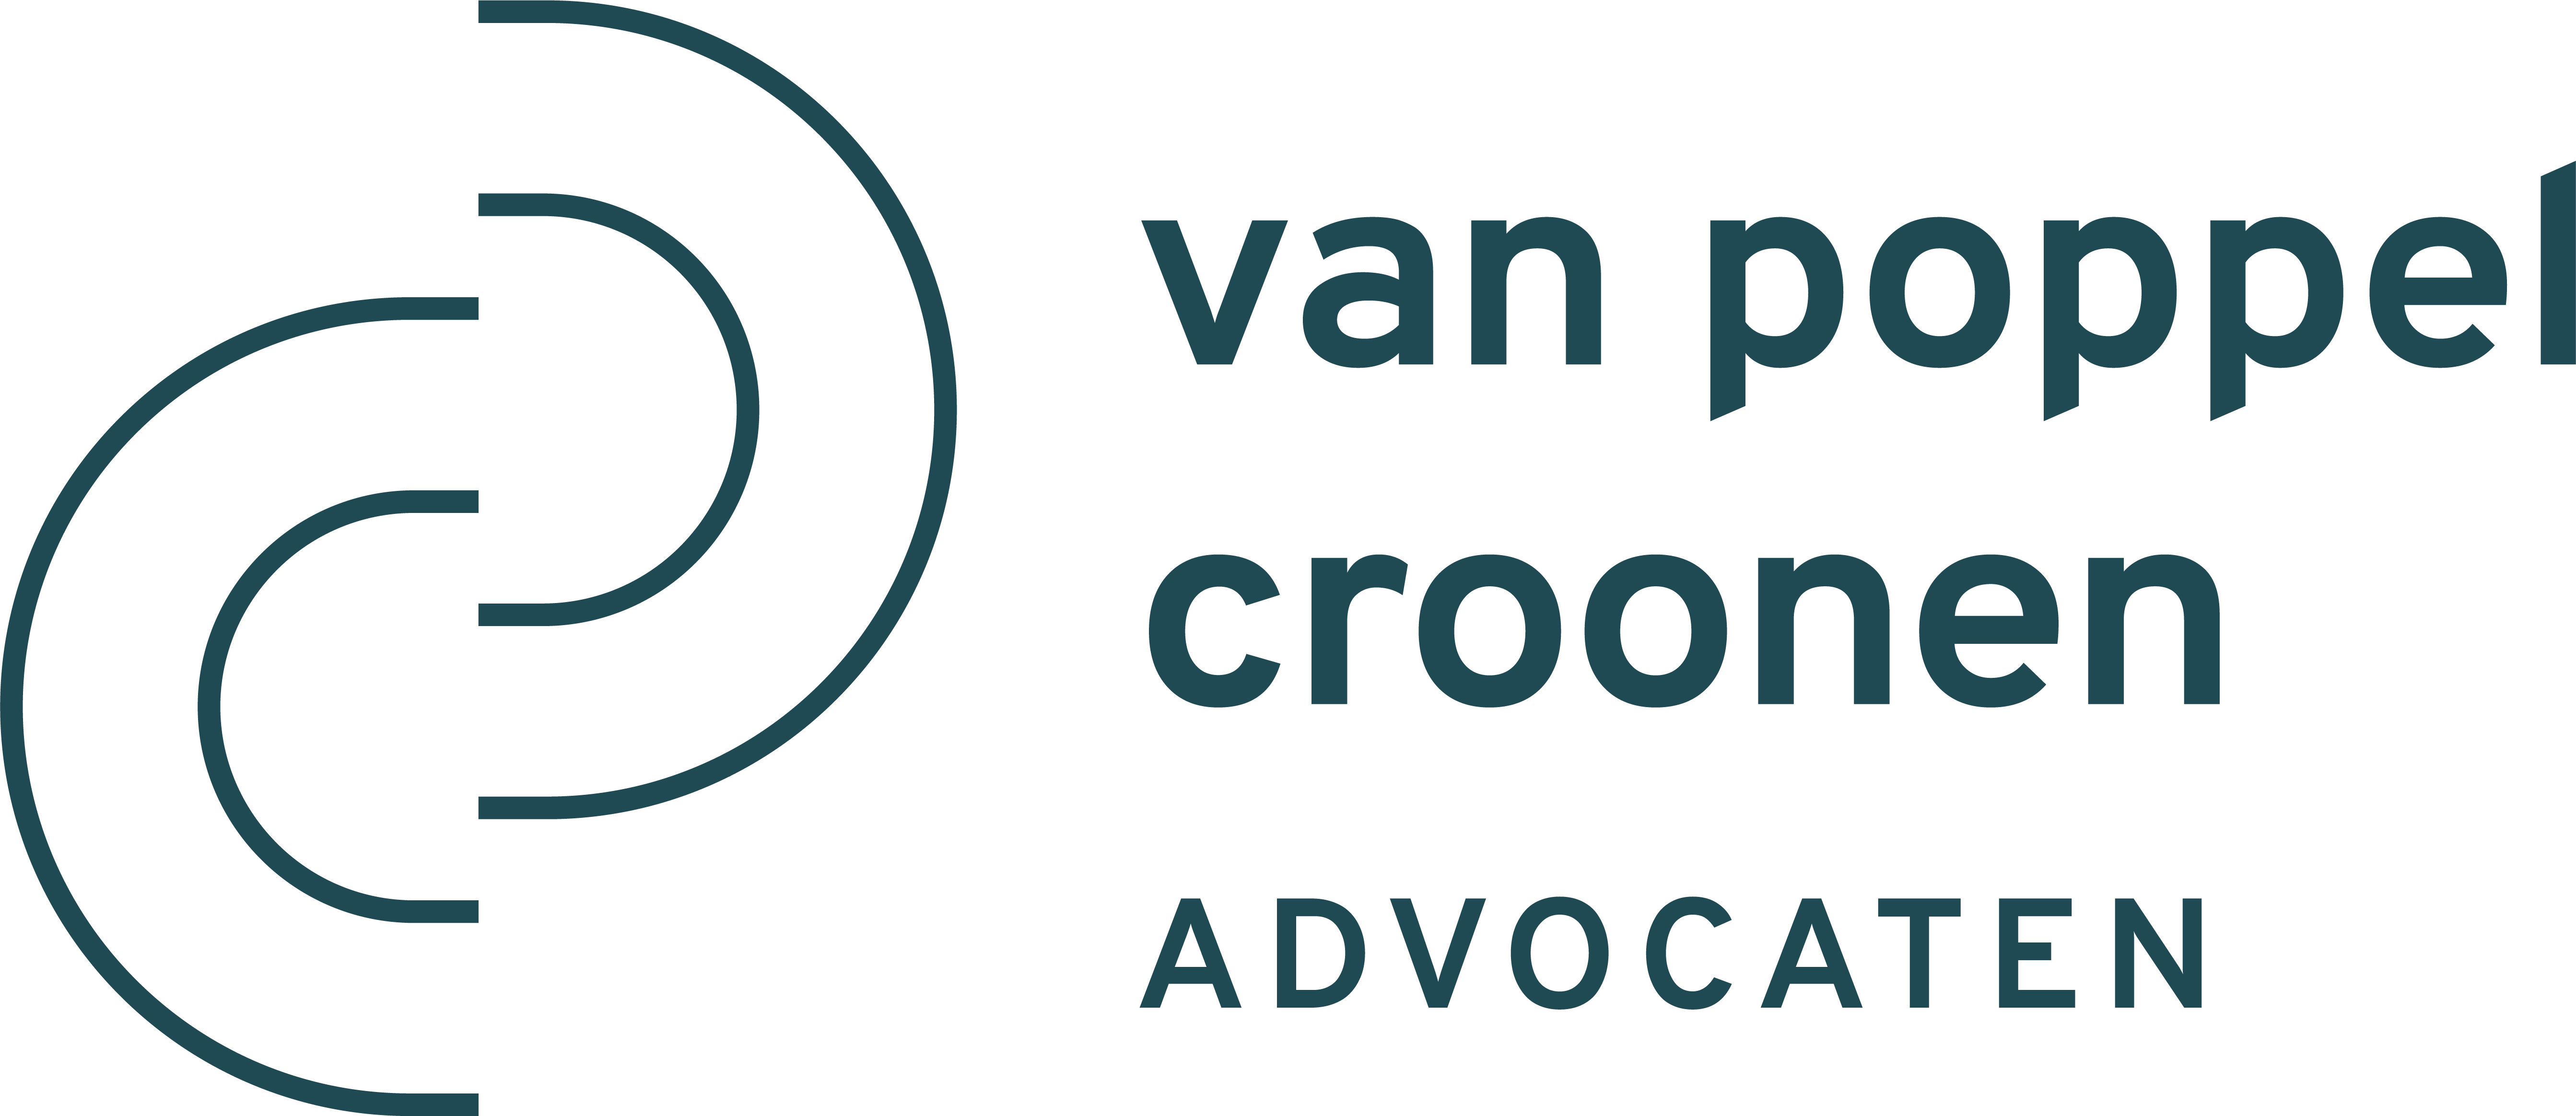 vanpoppel-croonen-logo